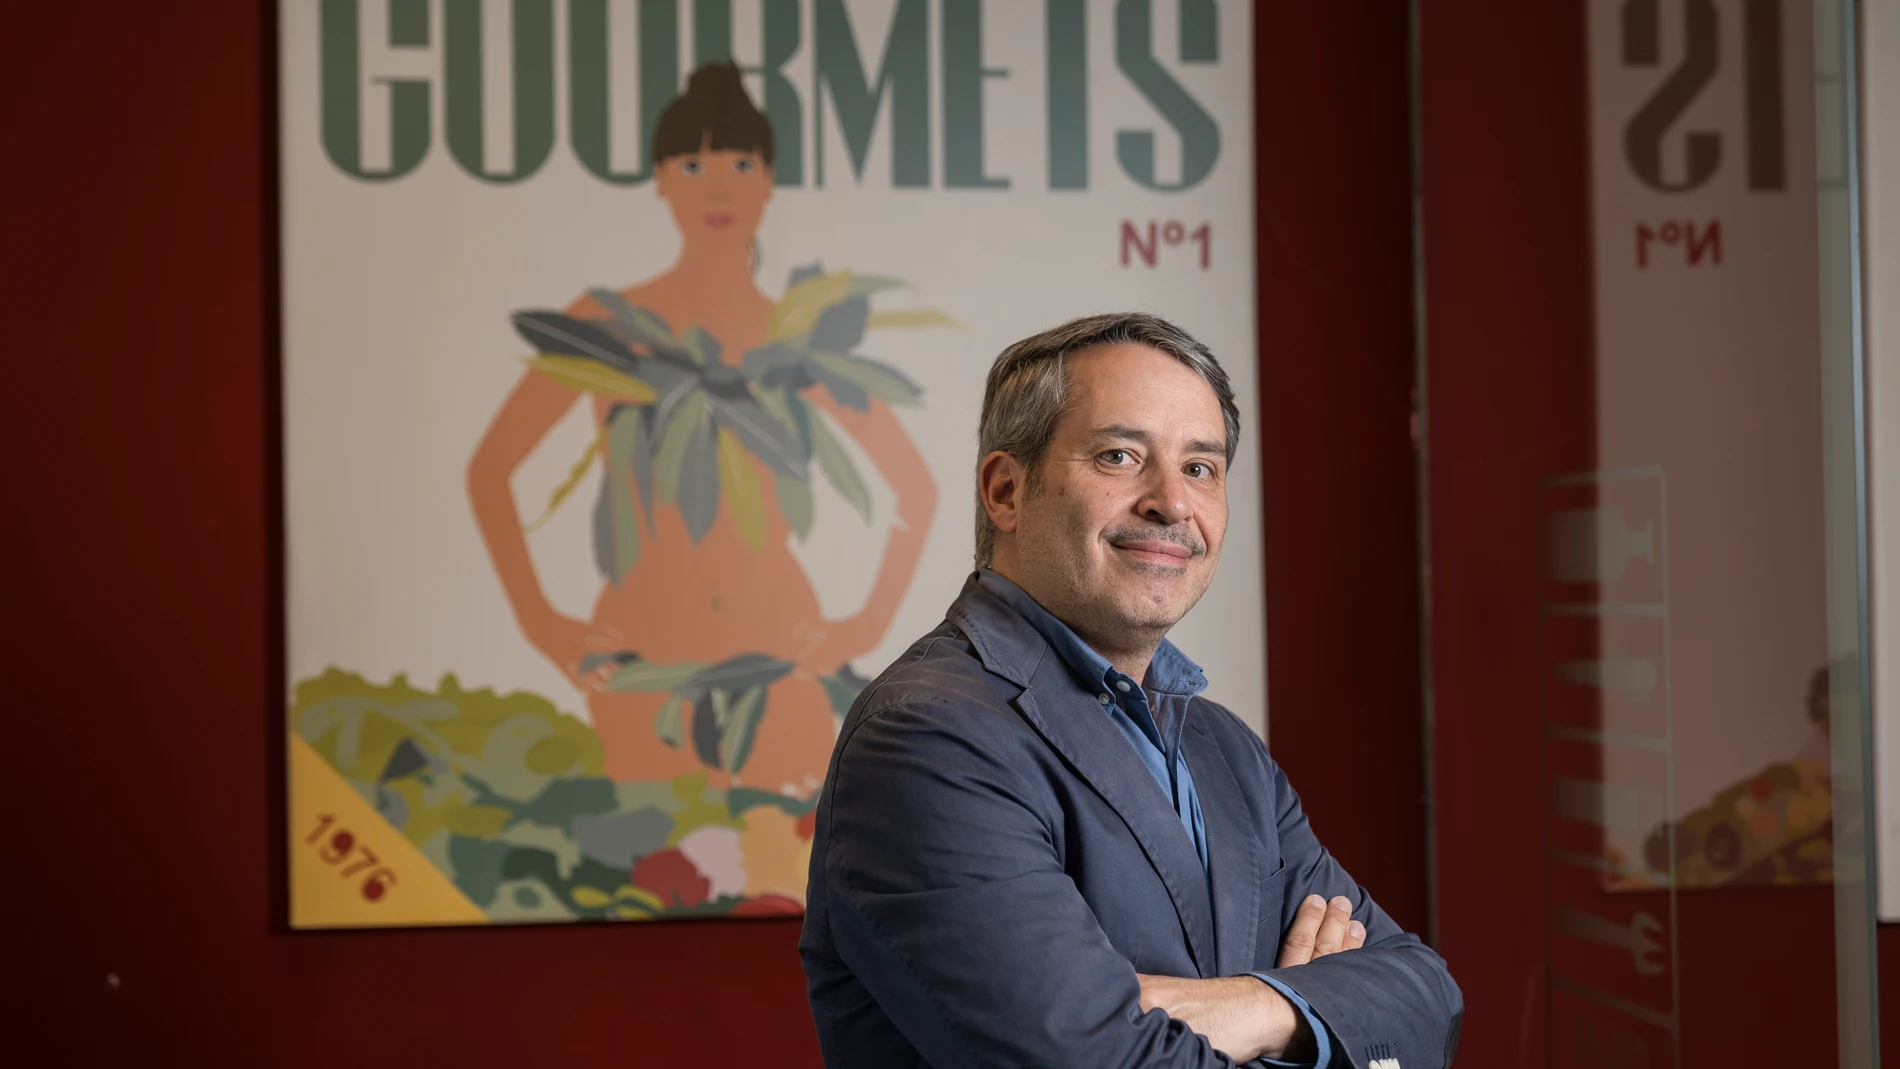 Entrevista con Francisco Lopez, Director General del Grupo Gourmets